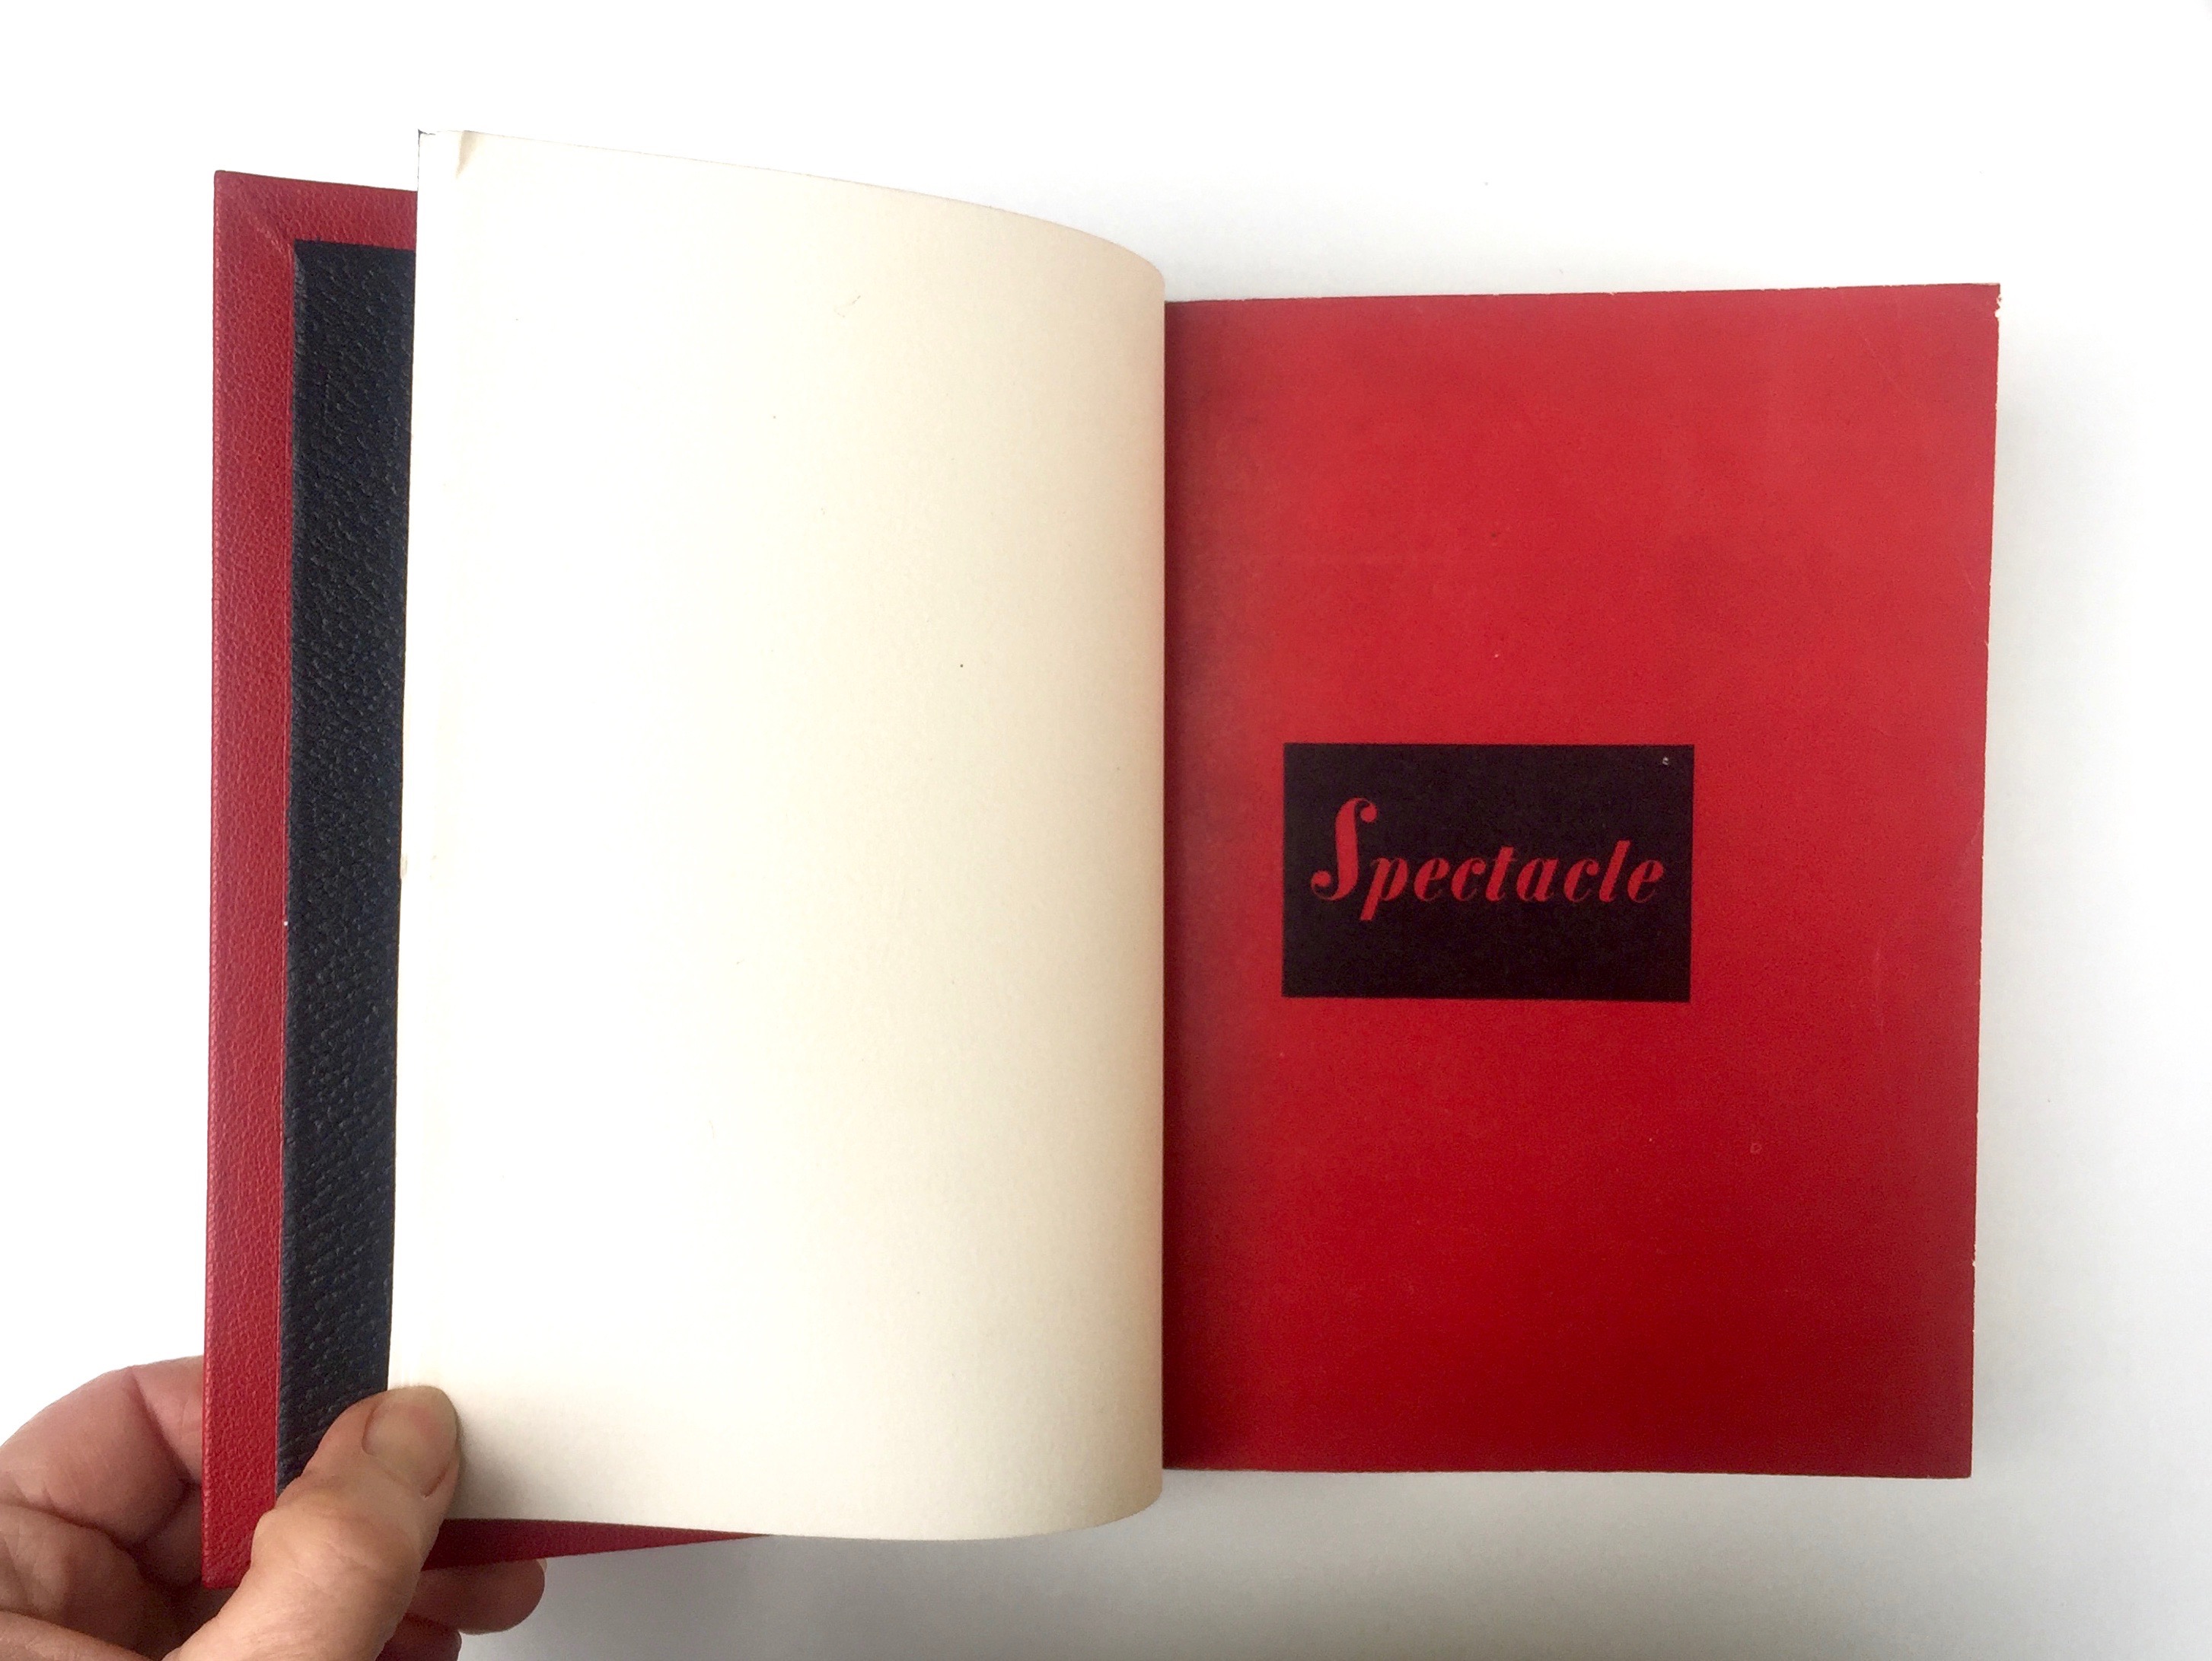 Plein cuir rouge, mosaïques noires évidéées représentant à l'identique le titrage du livre, tranchefile chapiteau bicolore rouge et noire, plats en cuir noir, charnieres en cuir, étui. Une de couverture.